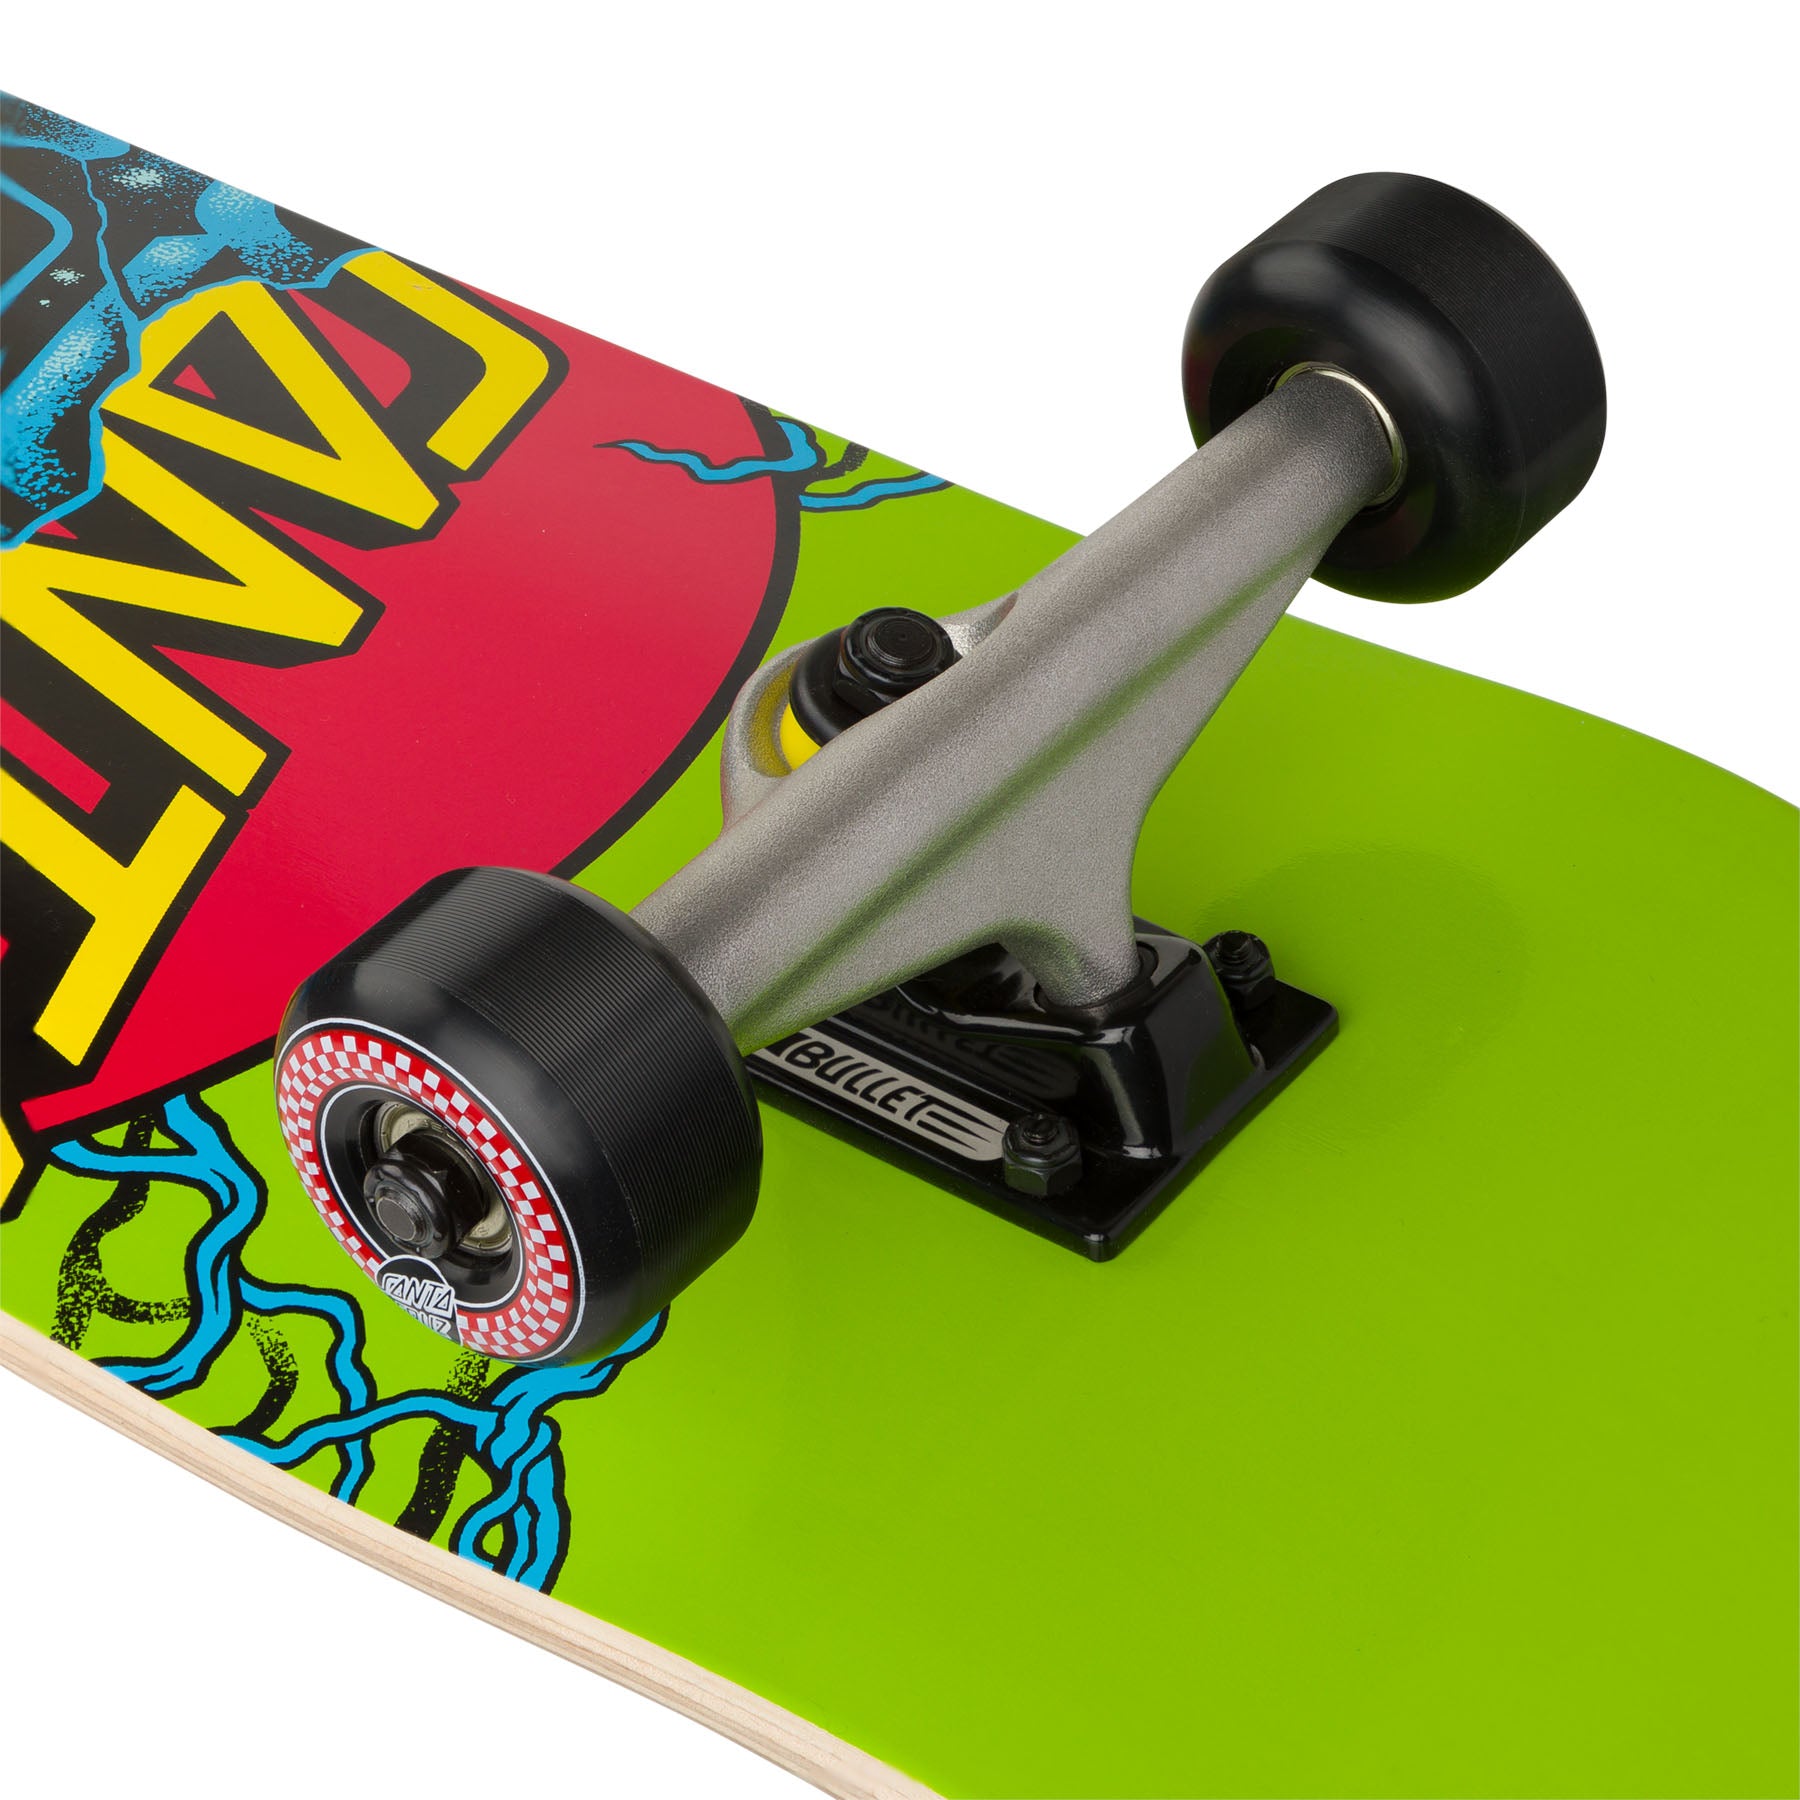 Santa Cruz Classic Dot Stranger Things Skateboard Complete 8.25"